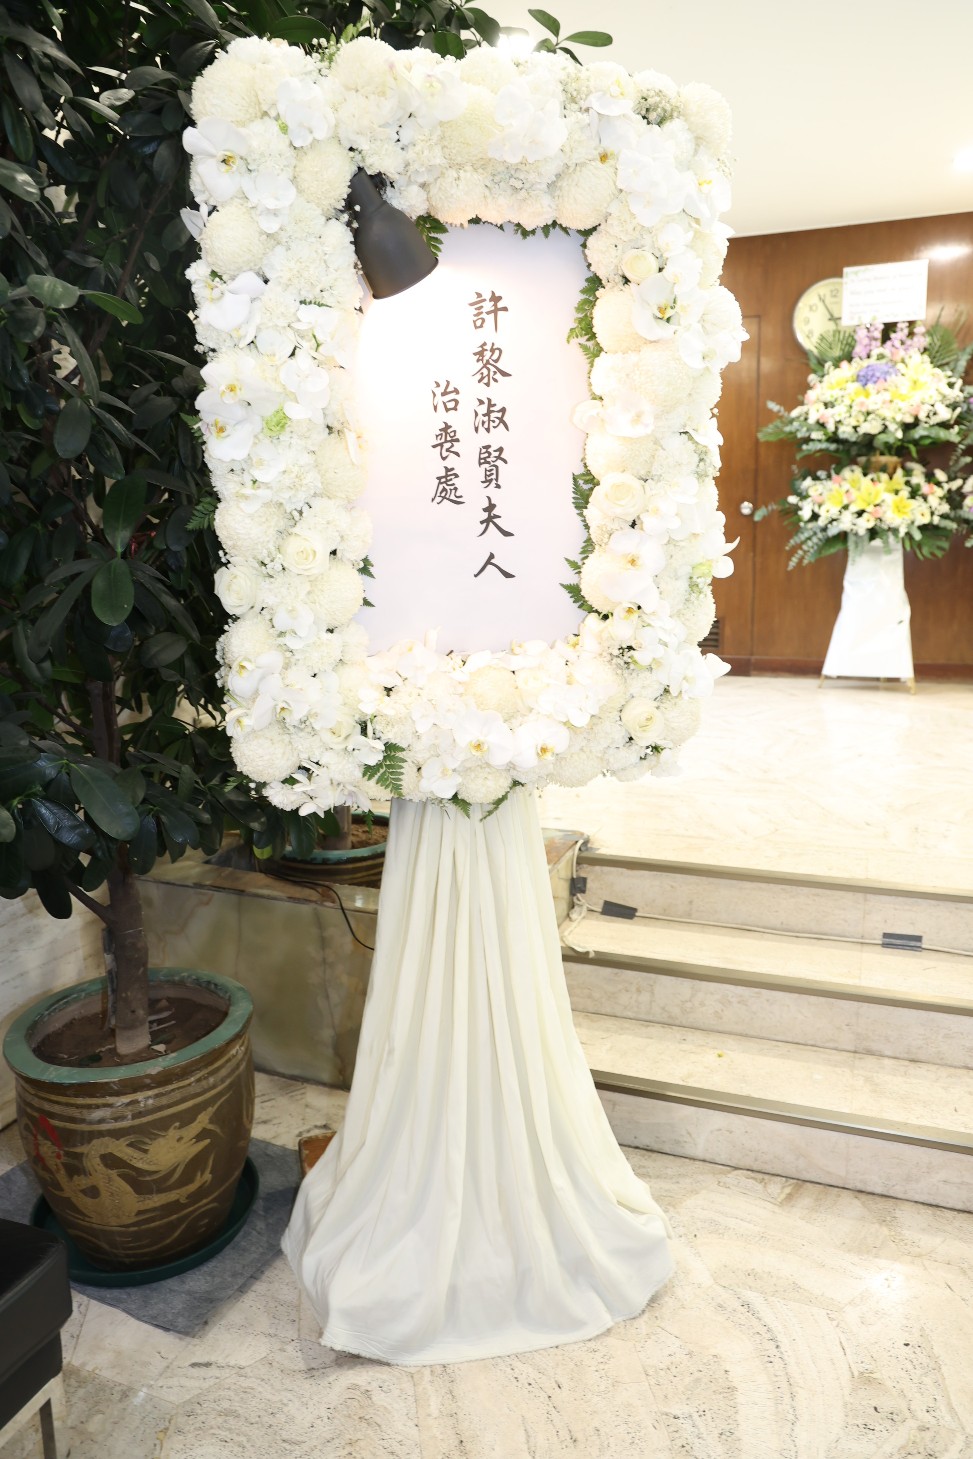 黎淑賢年初在香港殯儀館設靈。